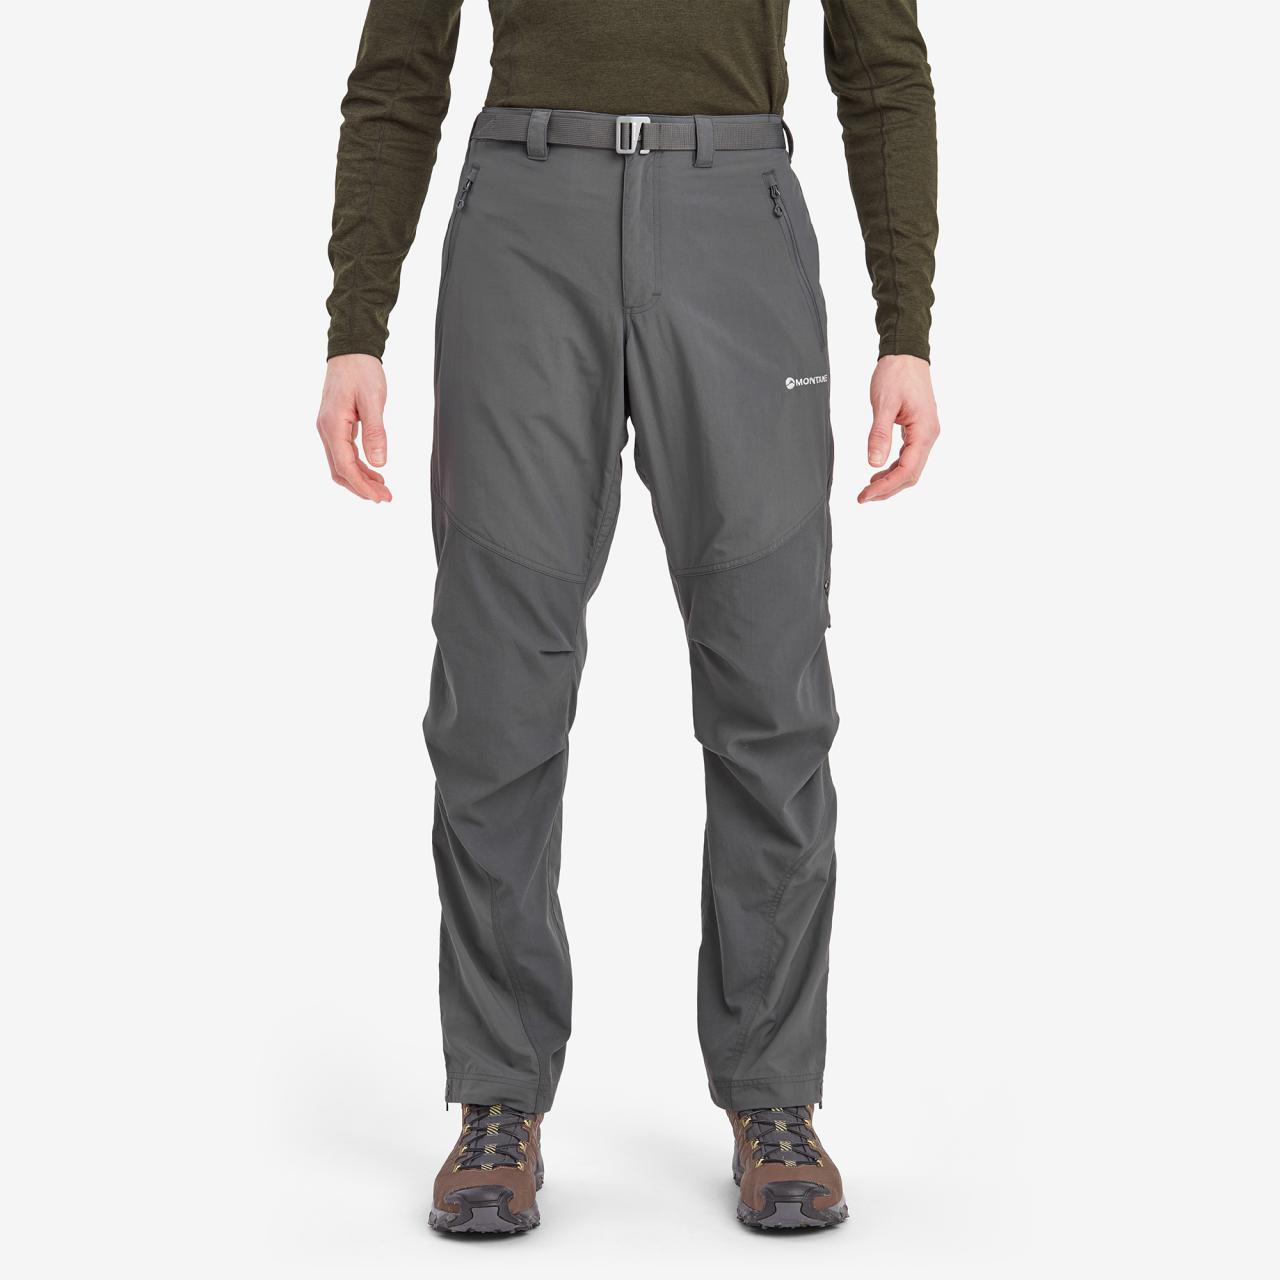 TERRA PANTS LONG LEG-SLATE-36/XL pánské kalhoty šedé